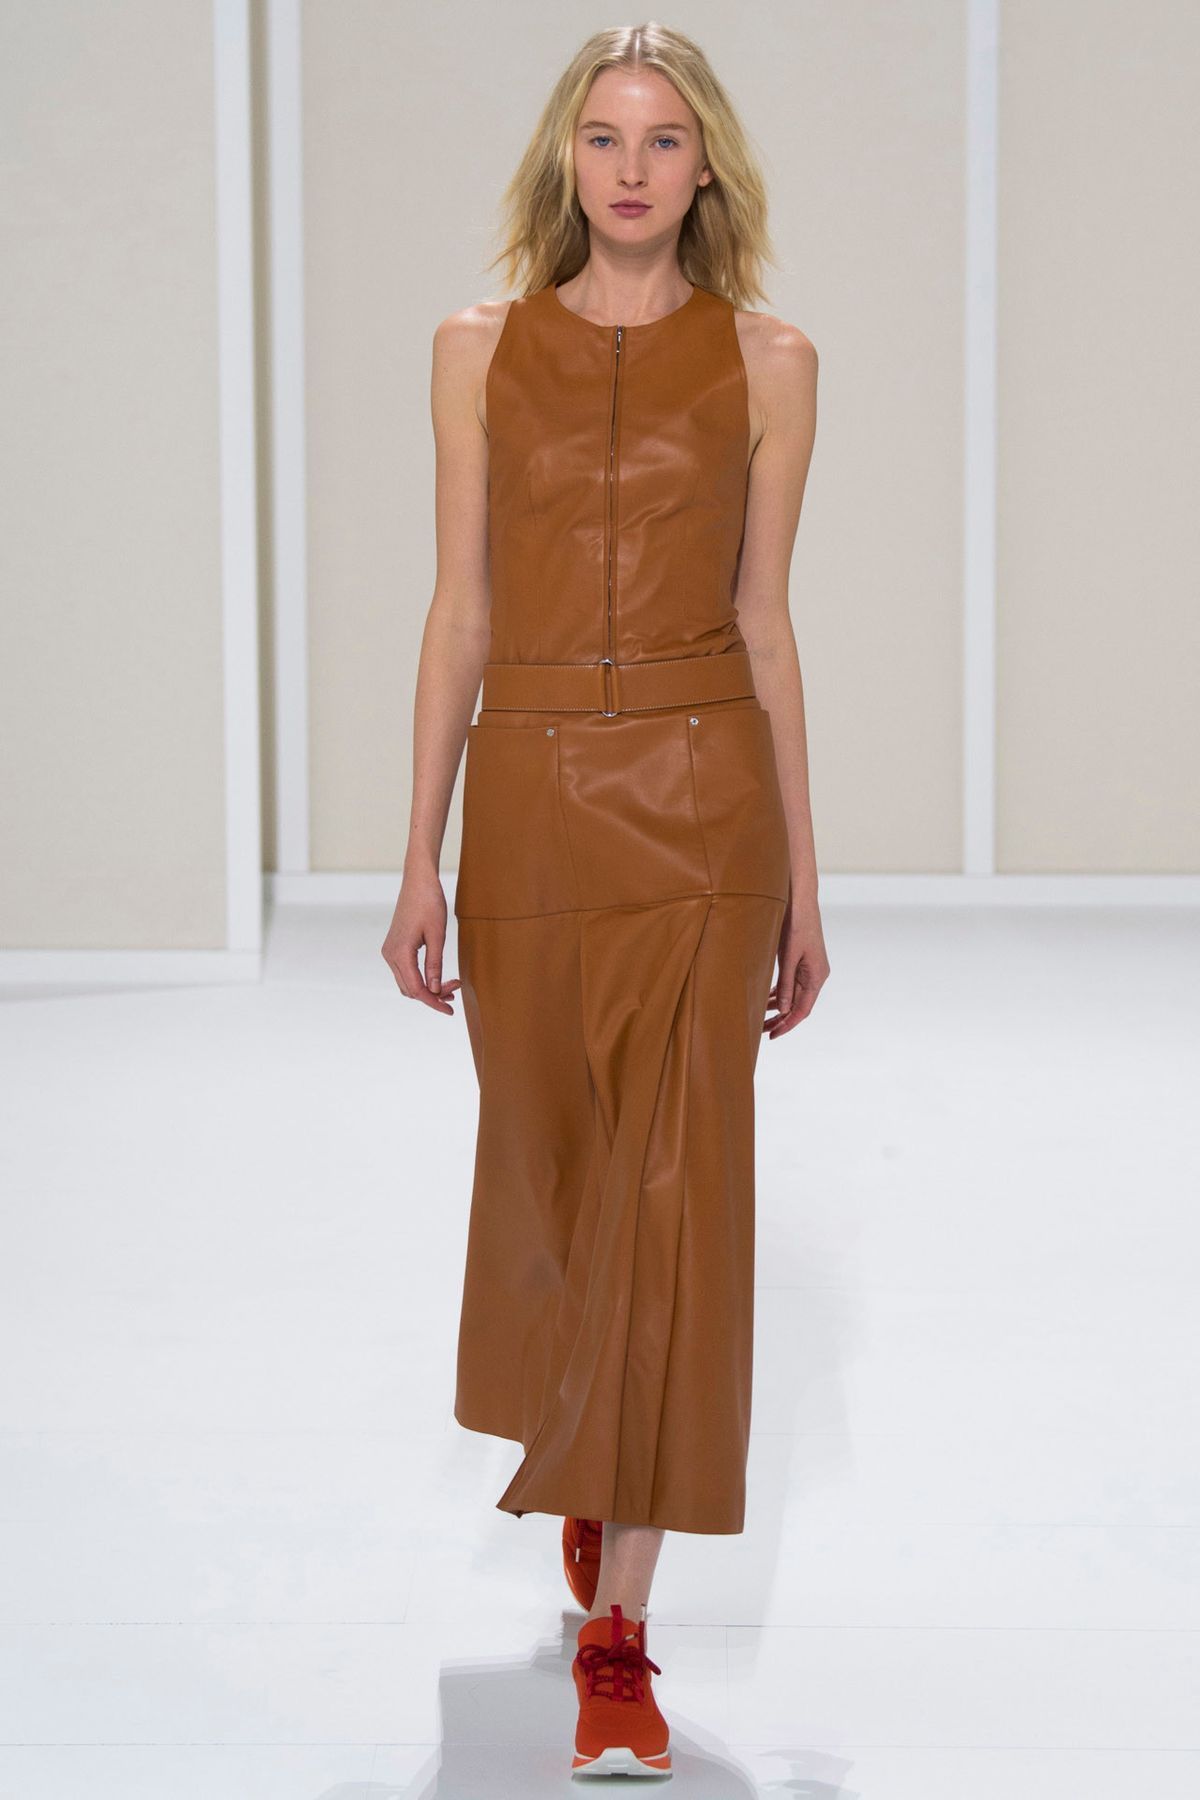 Hermès ready-to-wear spring/summer '16 - Vogue Australia